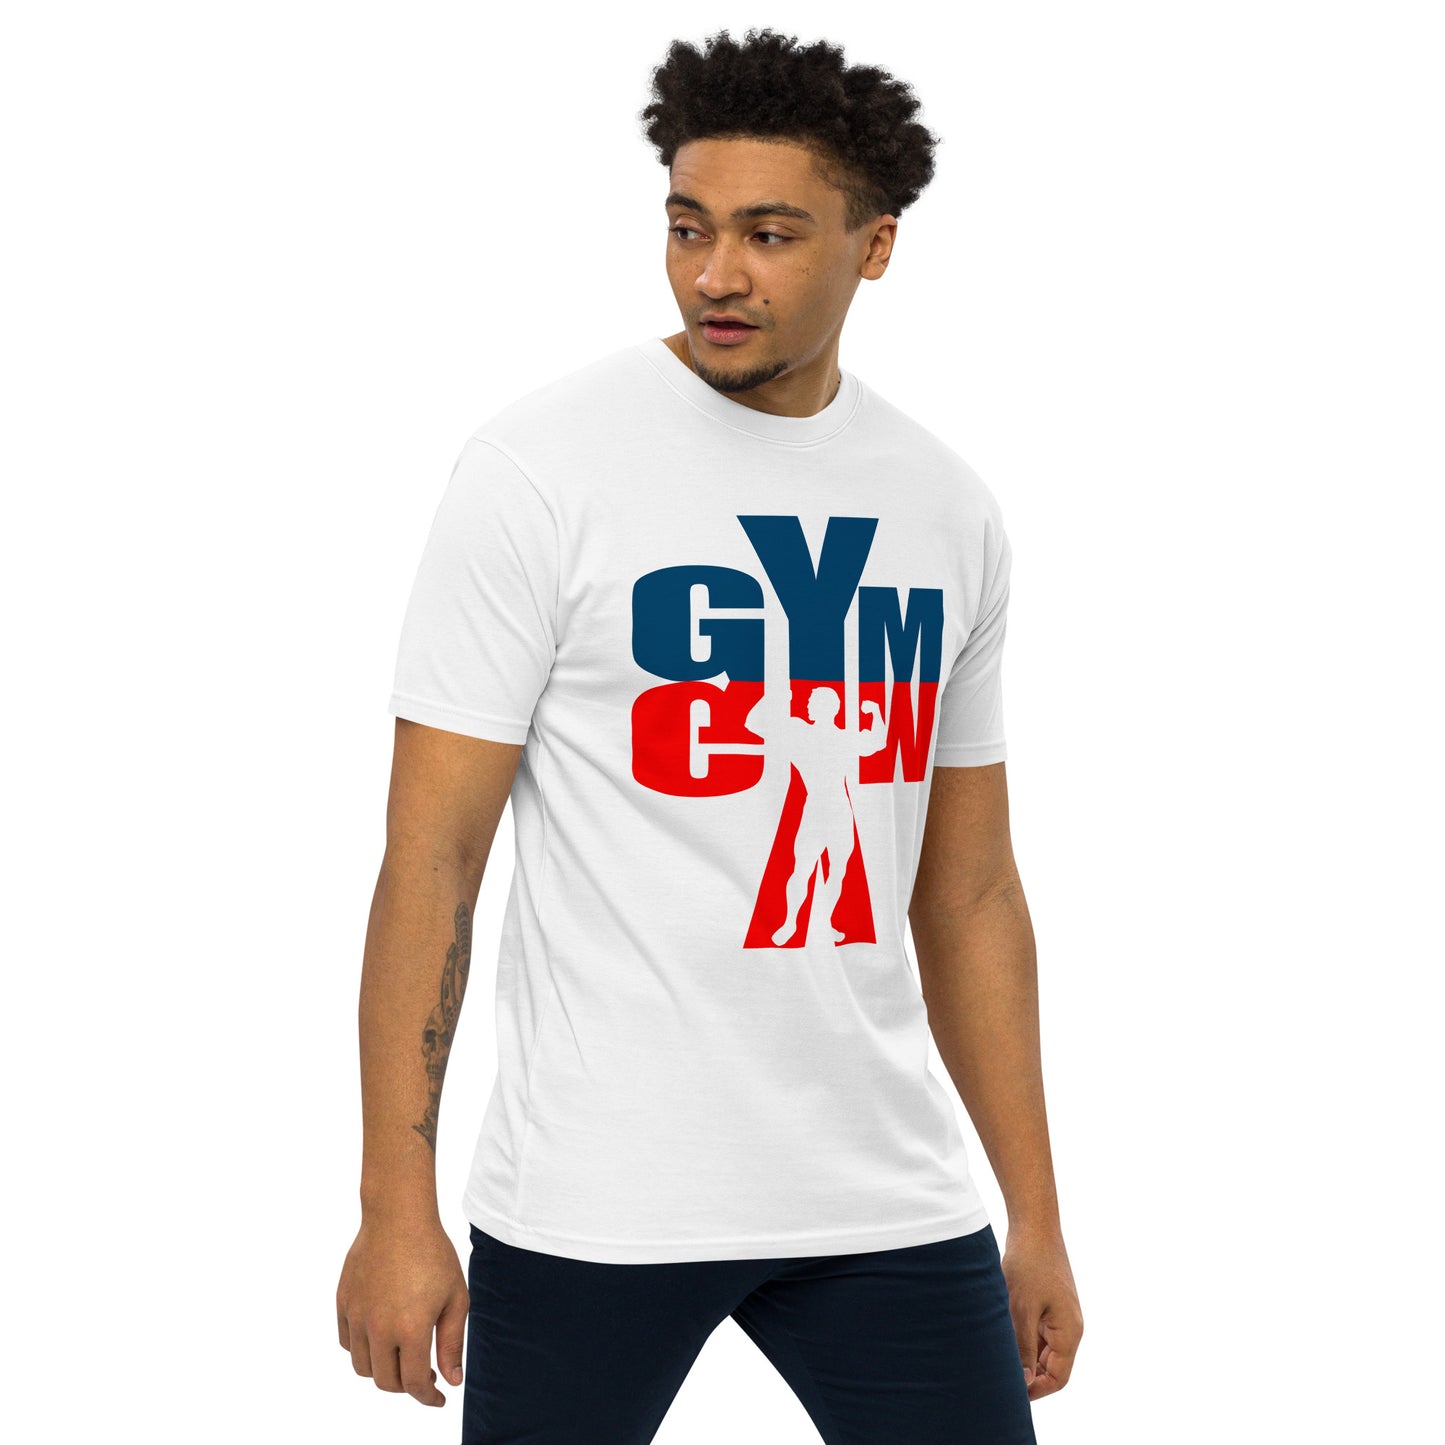 gym - tees - men tshirts - shirts - graphic tees 